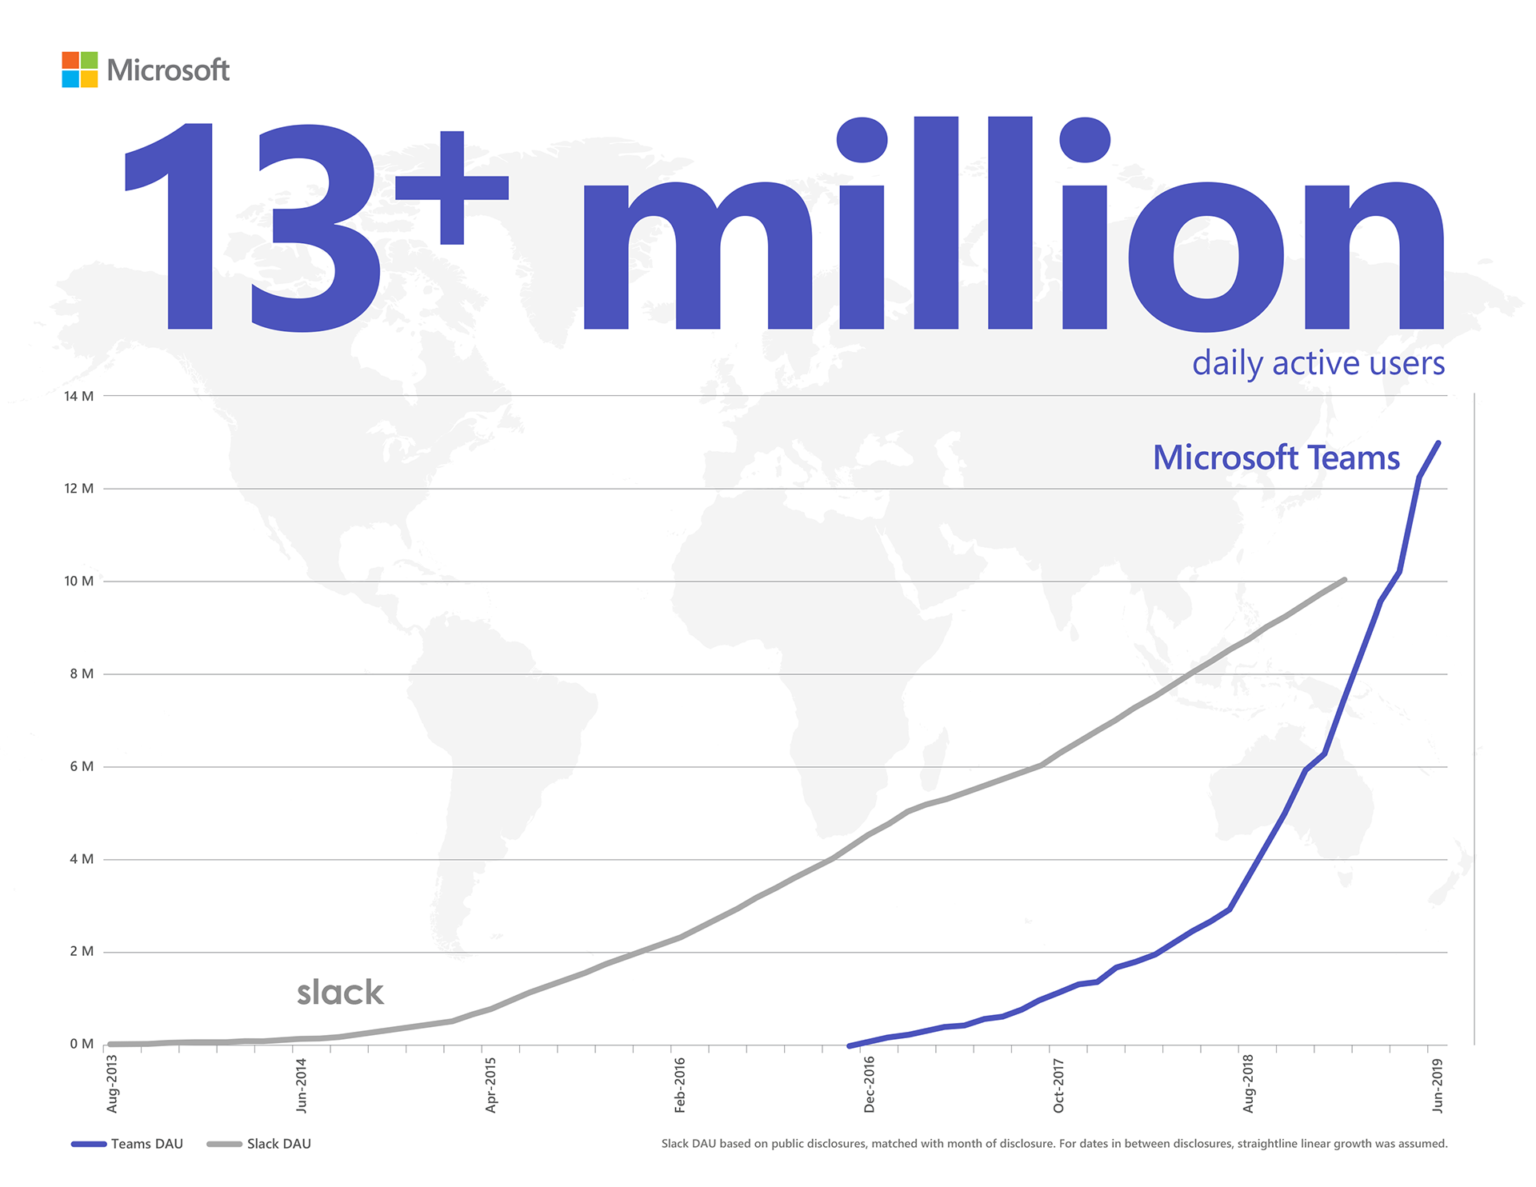 informasjonsgrafikk som viser at Microsoft Teams overgår Slack i daglige aktive brukere med 13+ millioner. Slack DAU basert på offentlige avsløringer, sammenlignet med avslørings-måneden. For datoer mellom avsløringene ble det antatt lineær vekst.